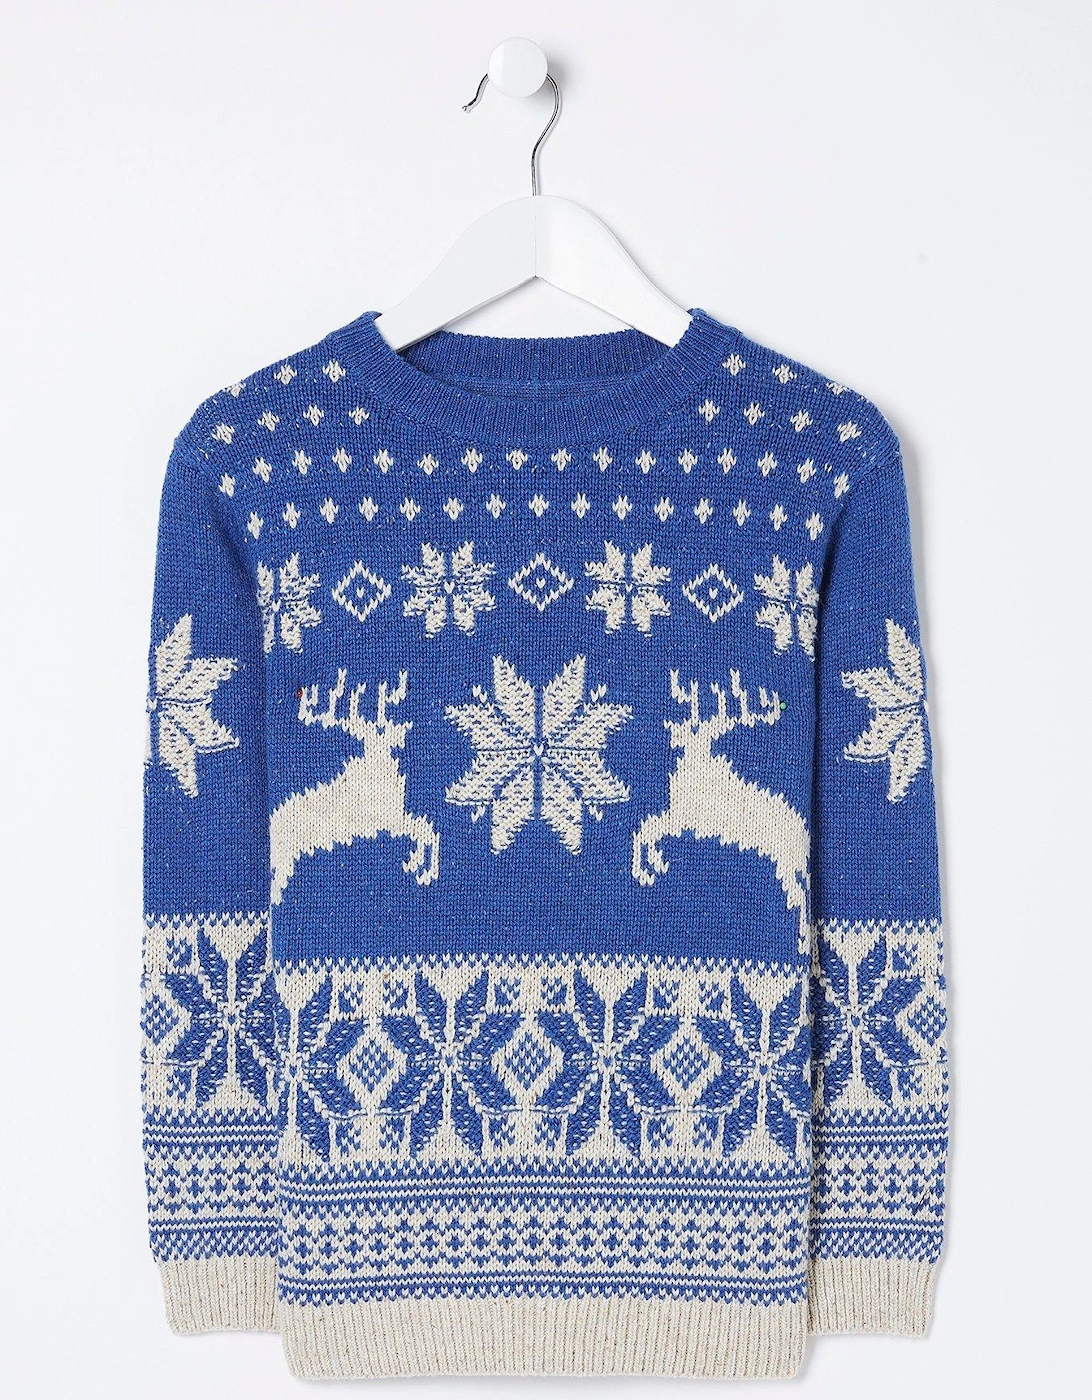 Boys Family Deer Christmas Knitted Jumper - Blue, 3 of 2